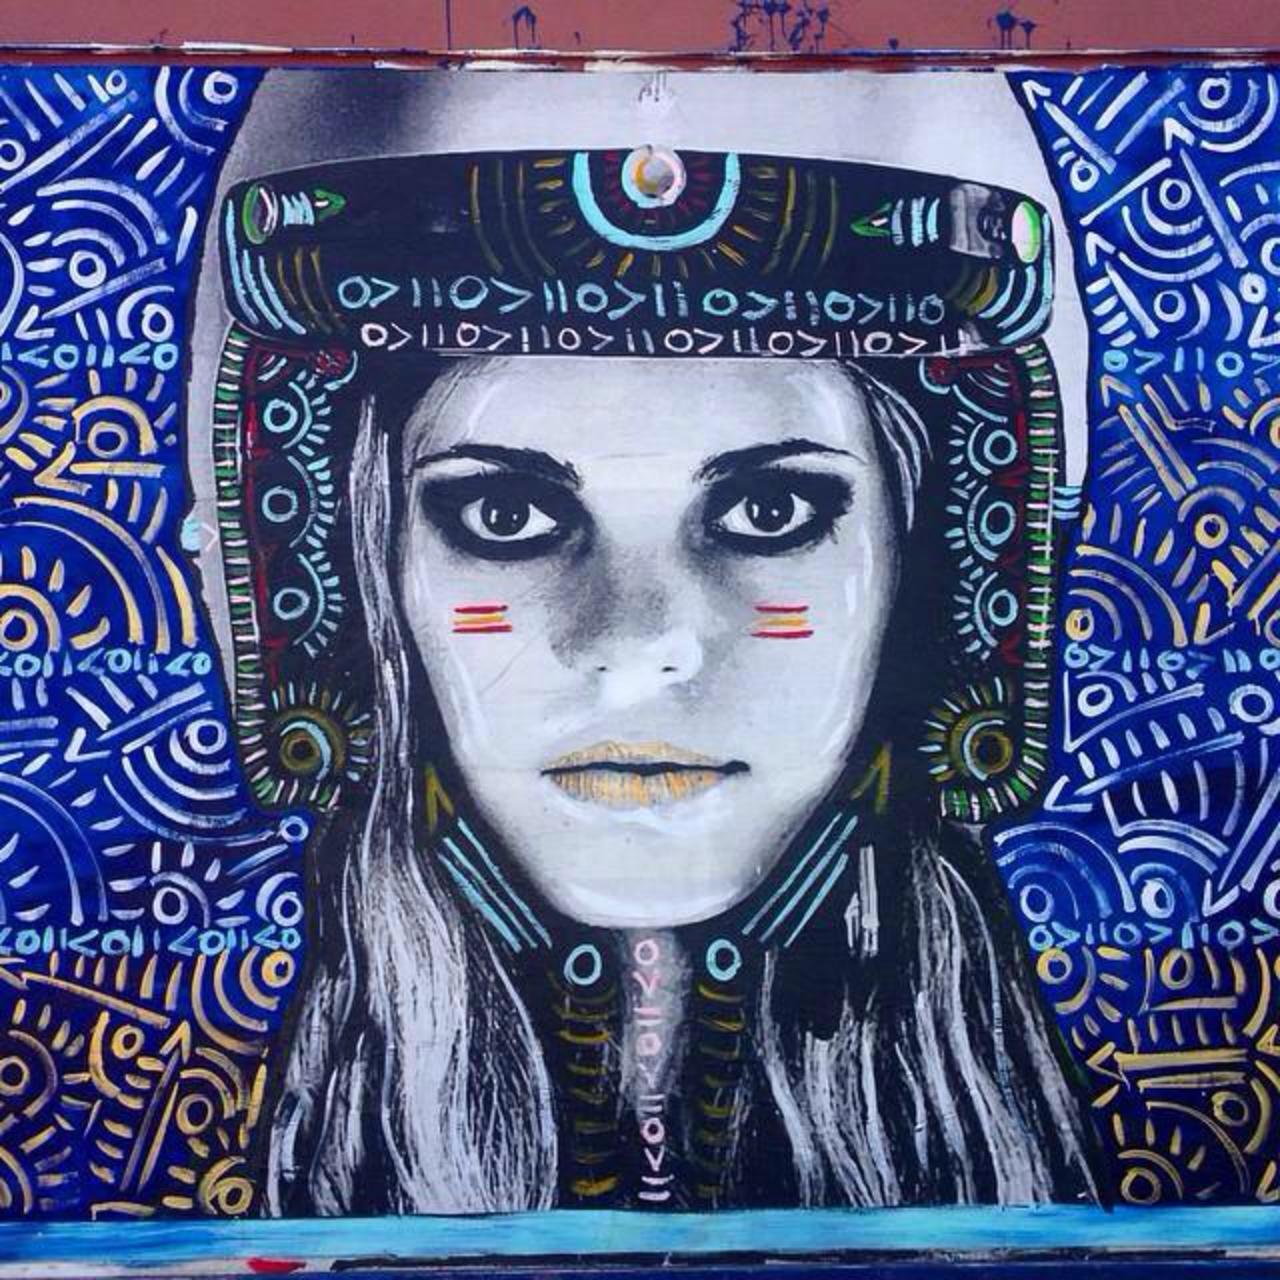 Street Art by Kelcey Fisher in LA
Photo by djcatnap

#art #arte #graffiti #streetart http://t.co/cre8mA7vAy